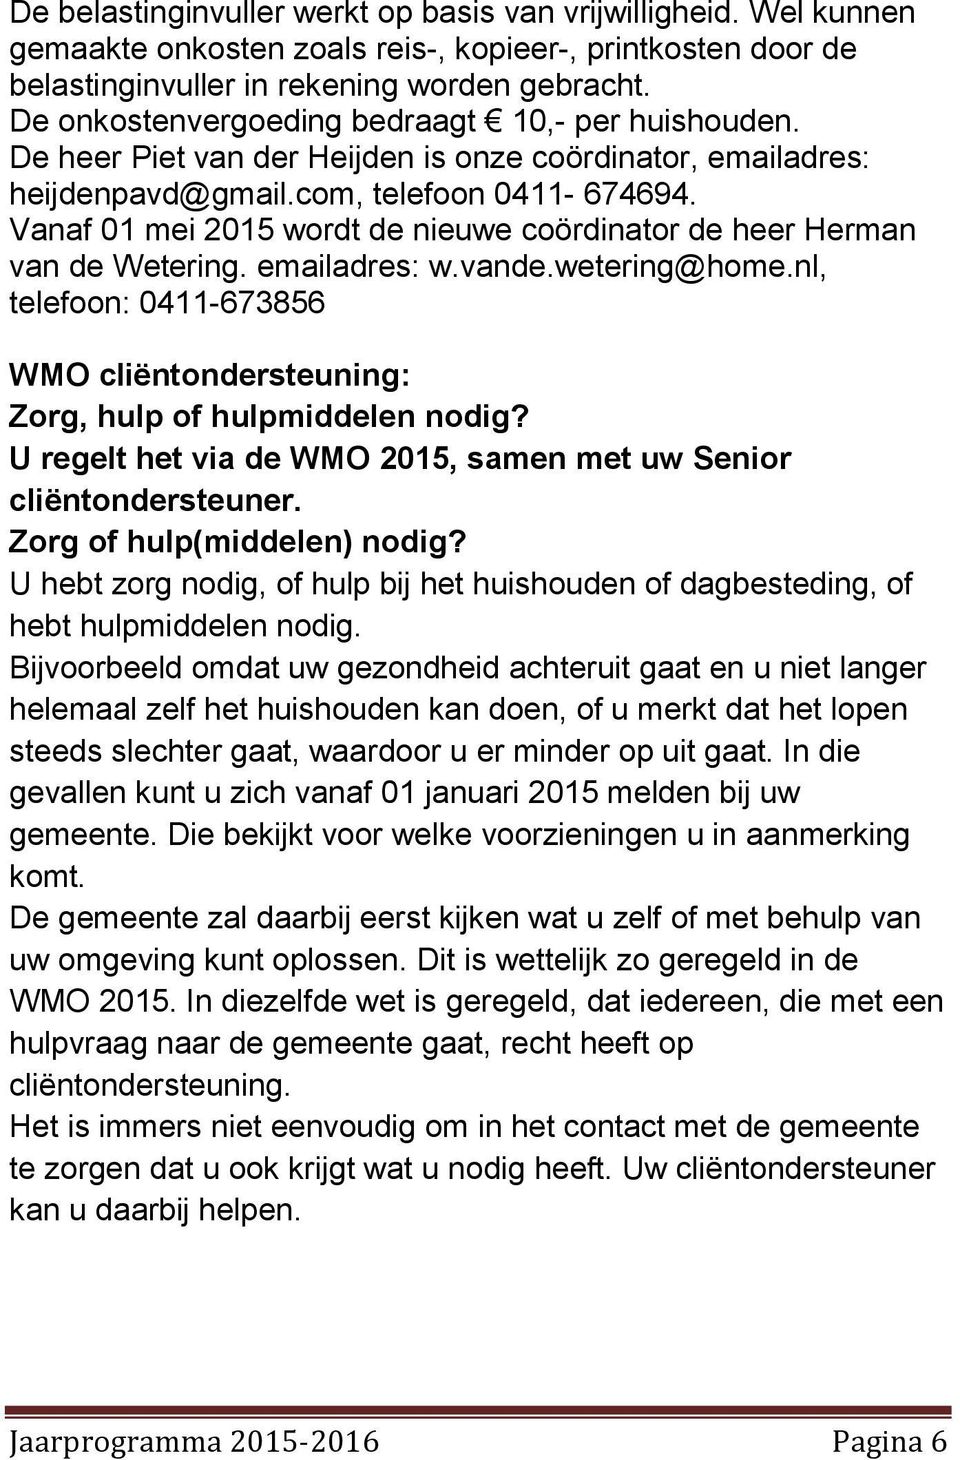 Vanaf 01 mei 2015 wordt de nieuwe coördinator de heer Herman van de Wetering. emailadres: w.vande.wetering@home.nl, telefoon: 0411-673856 WMO cliëntondersteuning: Zorg, hulp of hulpmiddelen nodig?